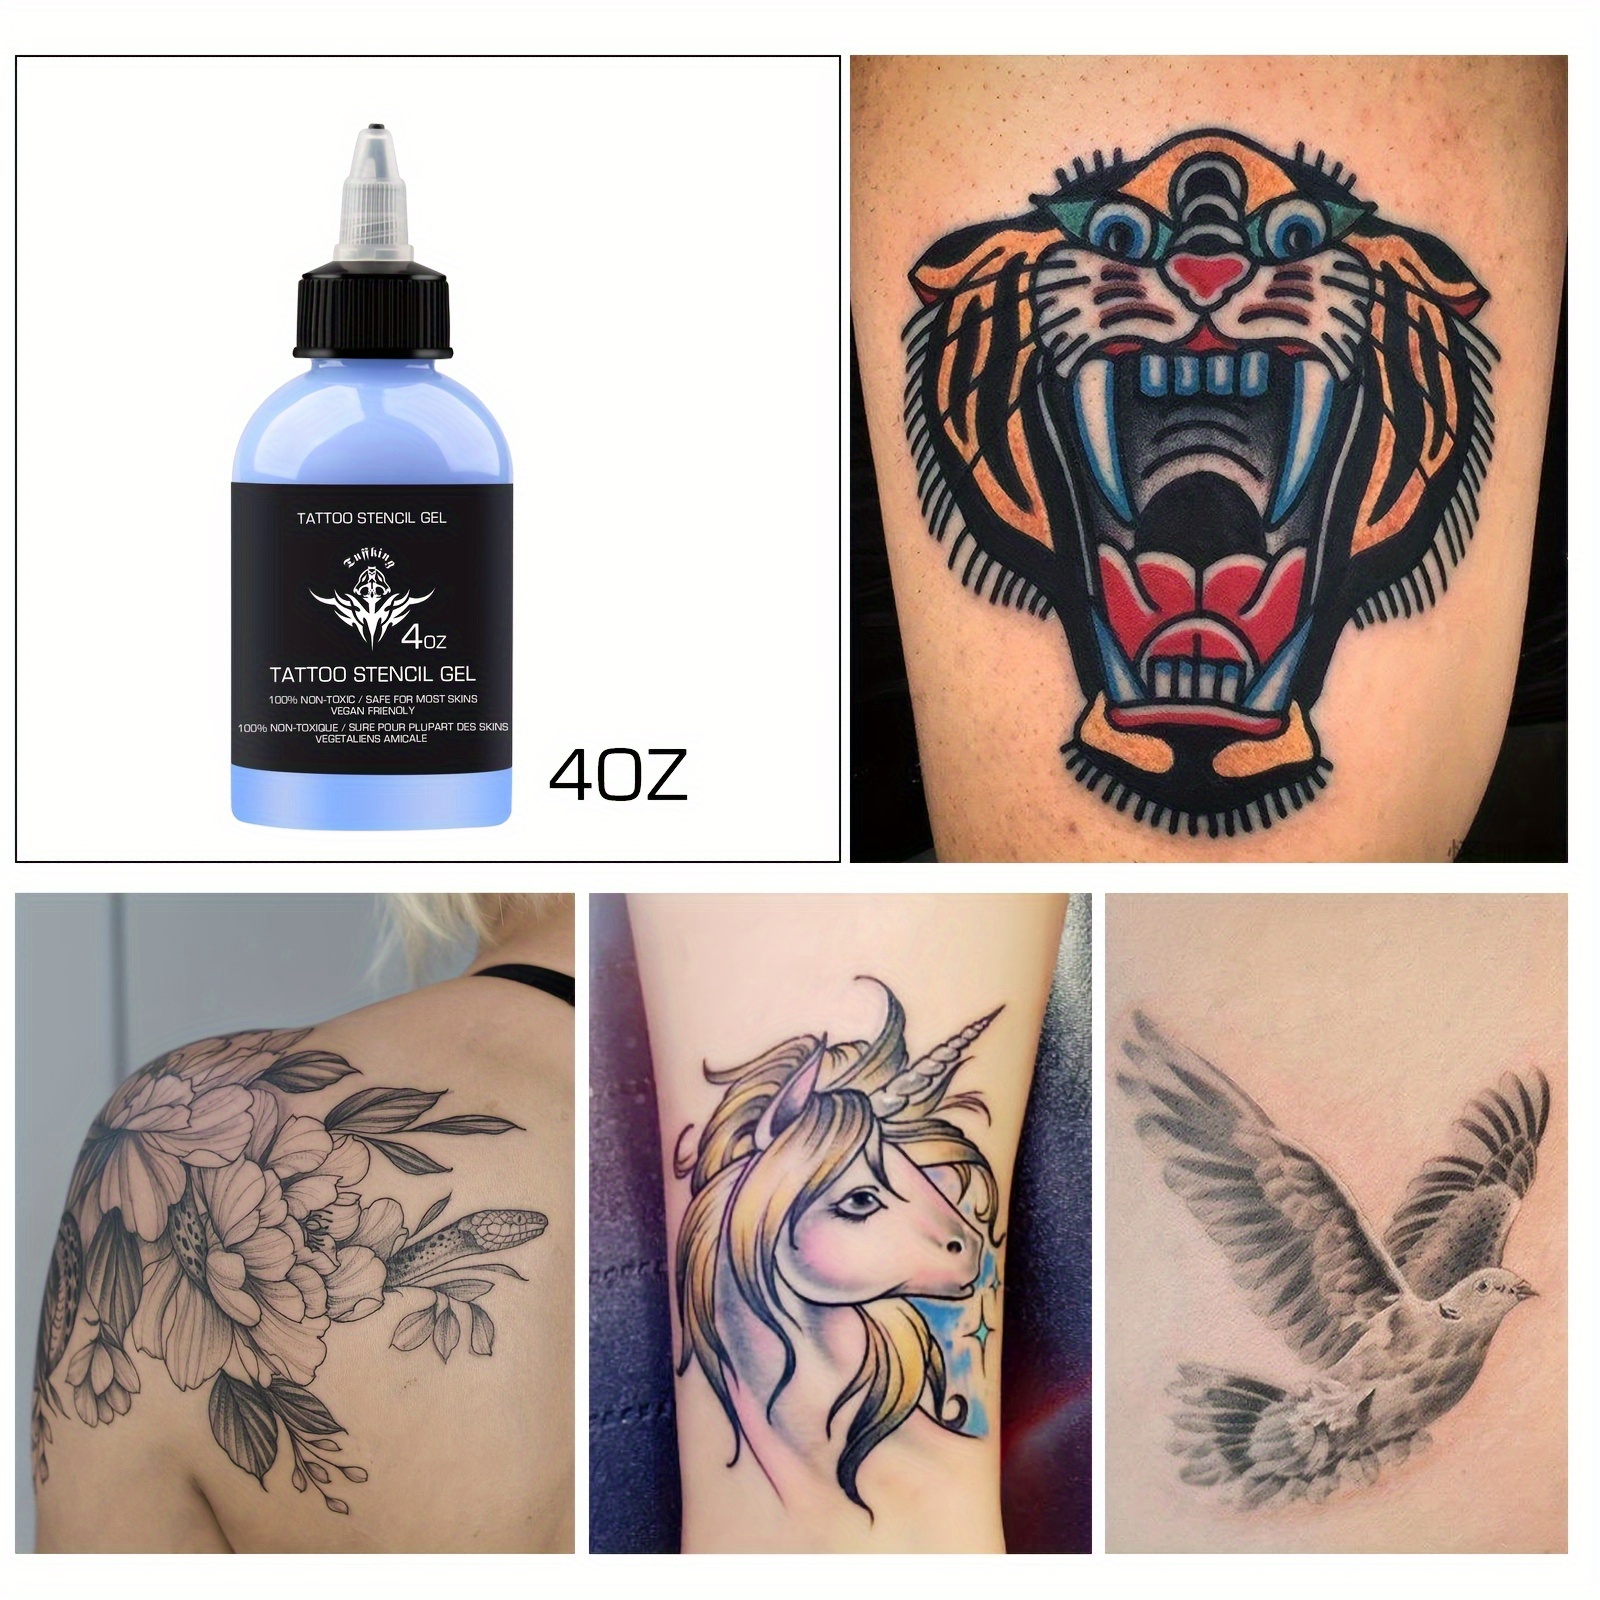 EZ Professional Tattoo Transfer Cream Gel Bottled 4oz Tattoo Art Stencil  Use Cosmetic Tattoo Supplies